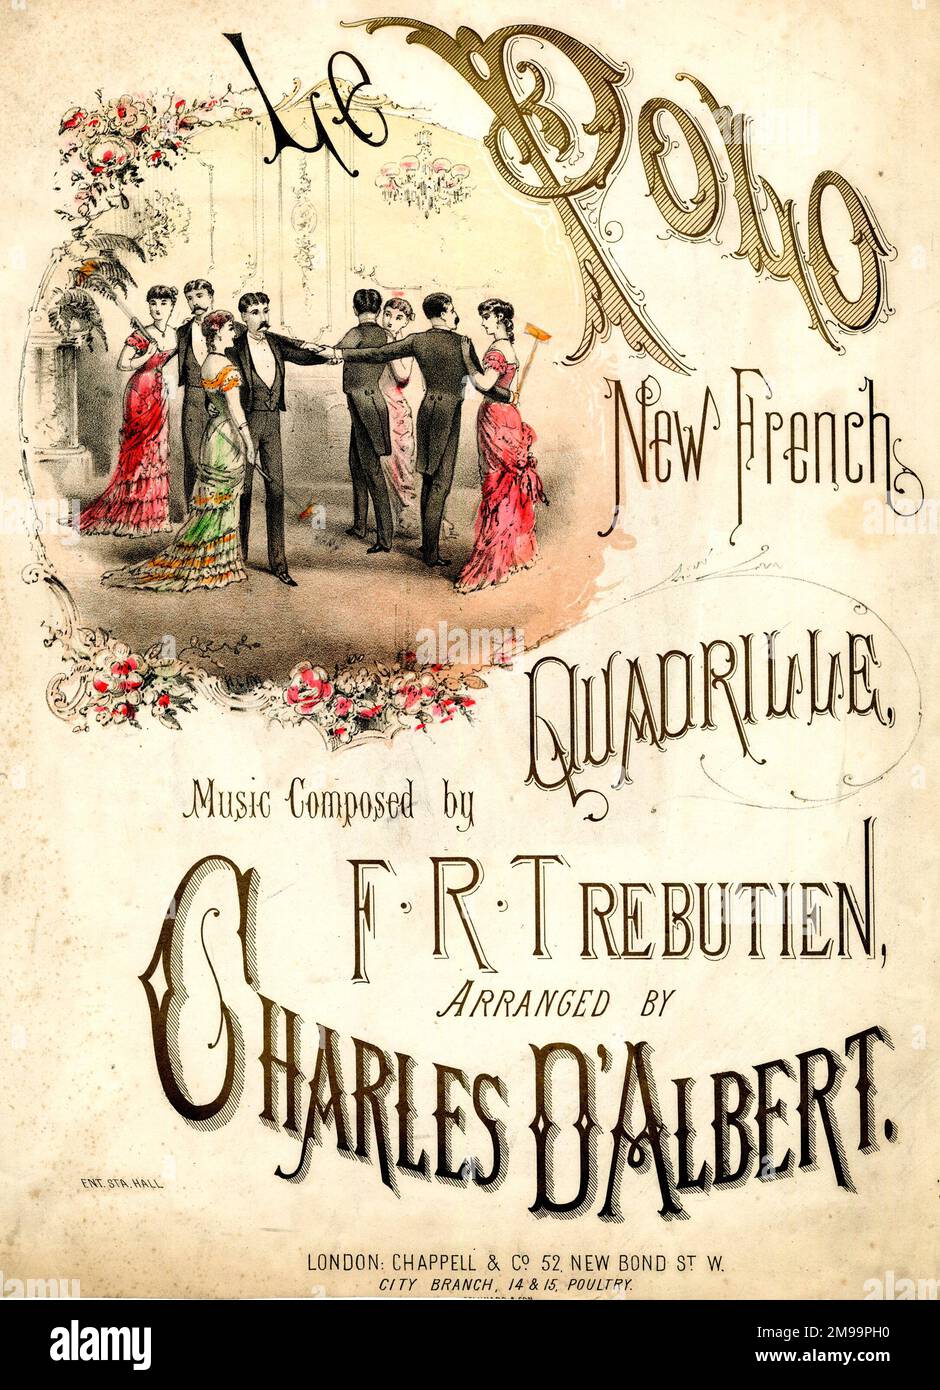 Copertina musicale, le Polo New French Quadrille, musiche di F R Trebutien, arrangiate da Charles D' Albert, con una partita di polo al coperto. Foto Stock